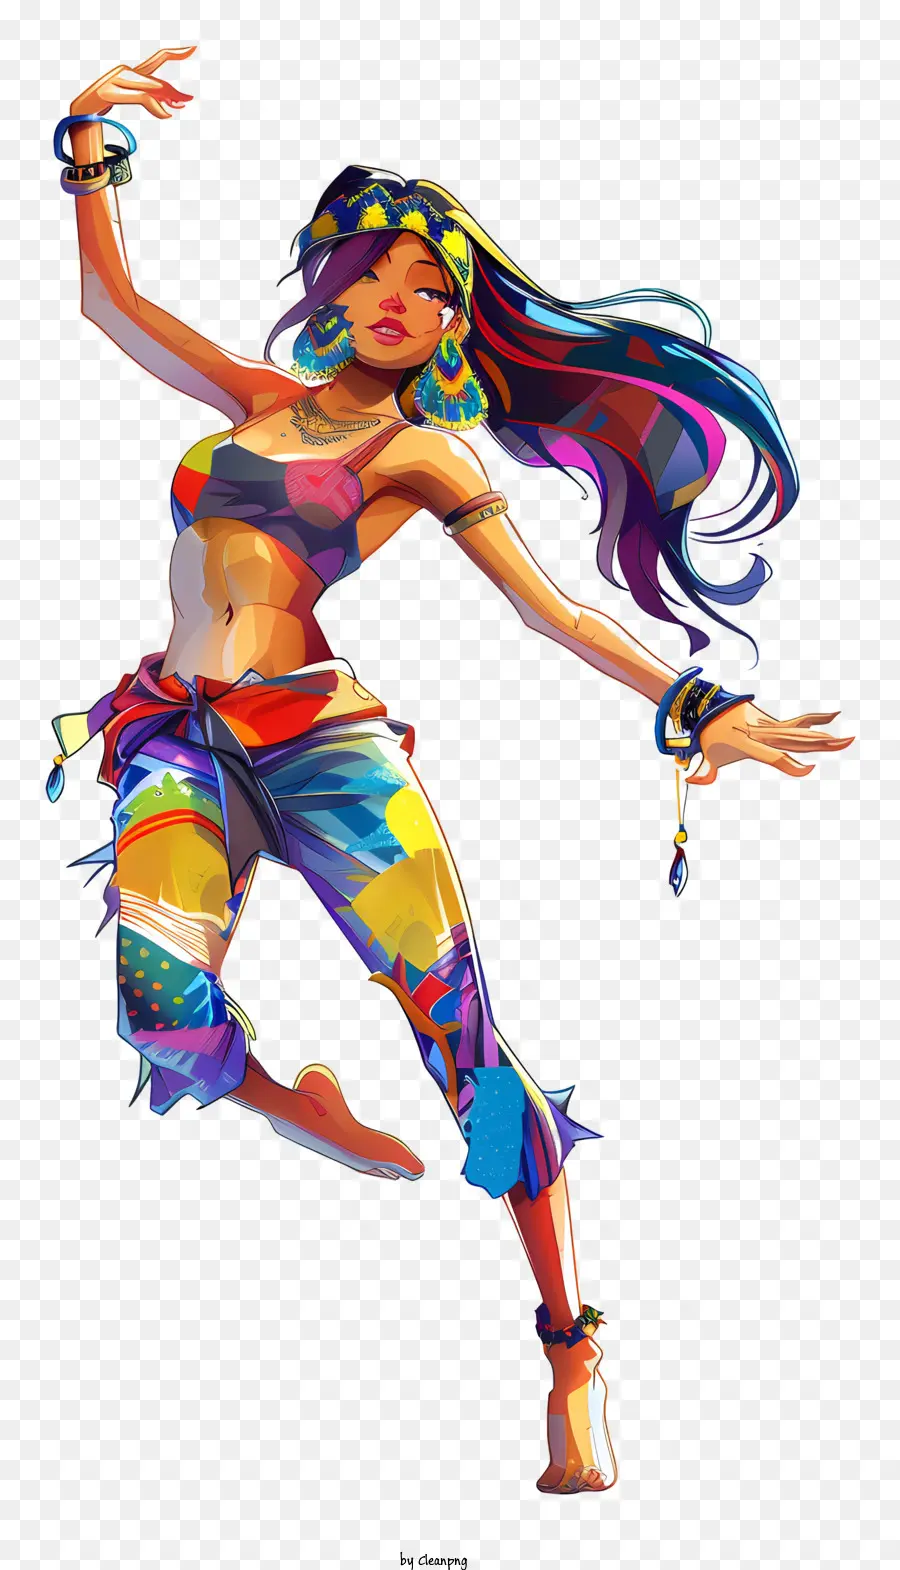 internationale Tanz Tag - Frau tanzt in farbenfrohen Kostüm und lächelt freudig